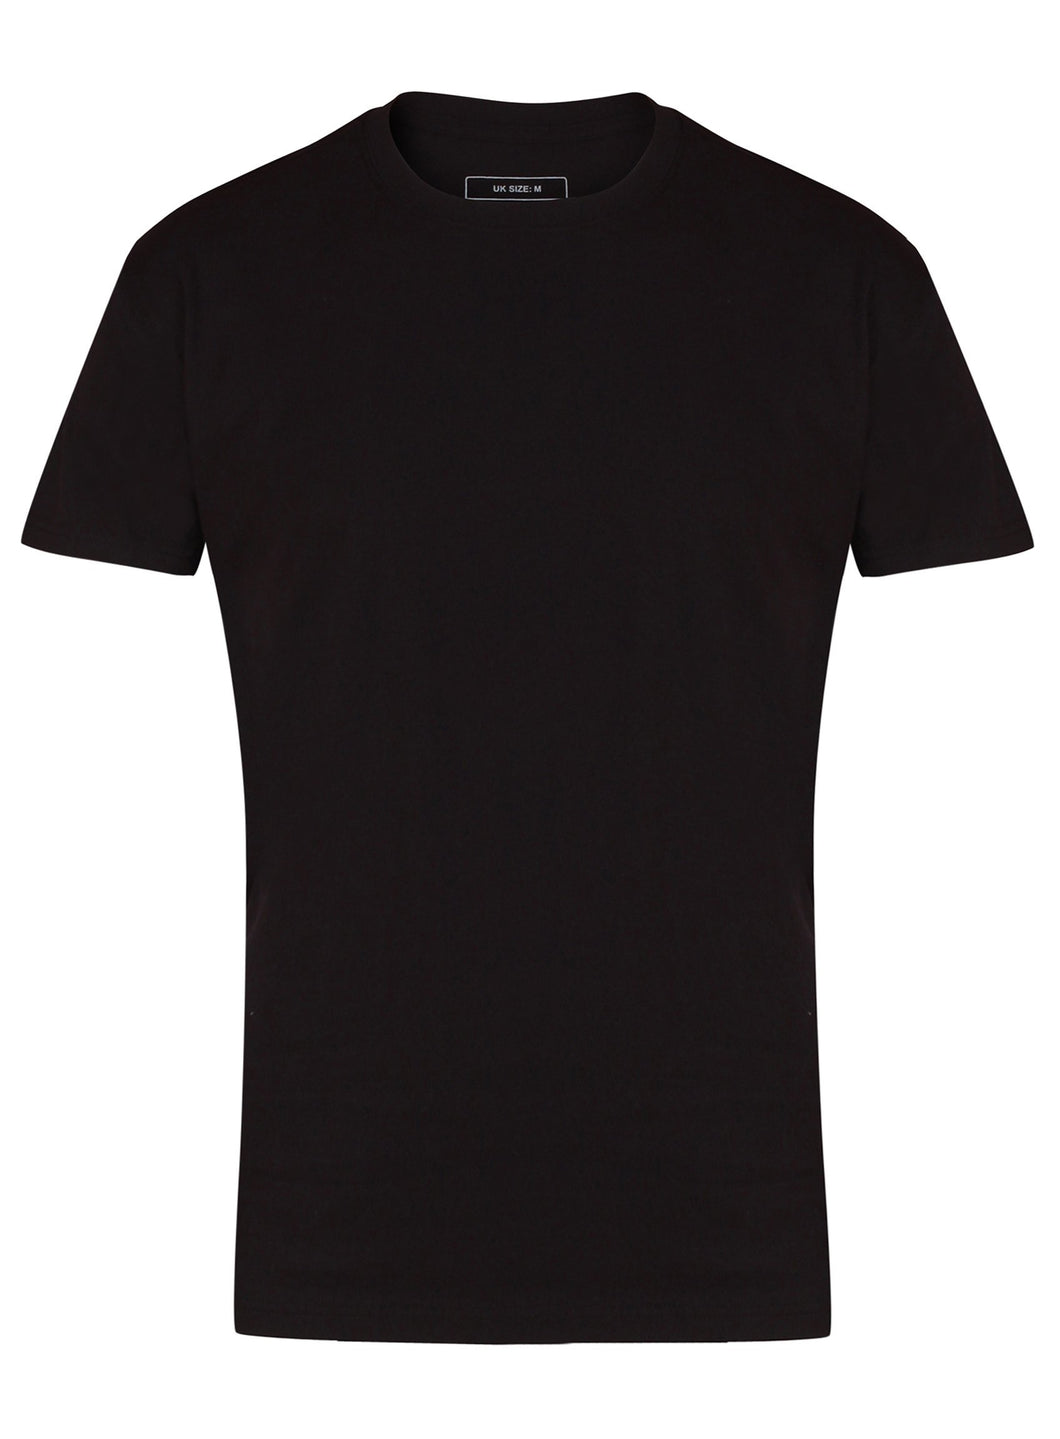 Premium T - Shirts Gazelle Sports UK Yes XS Black